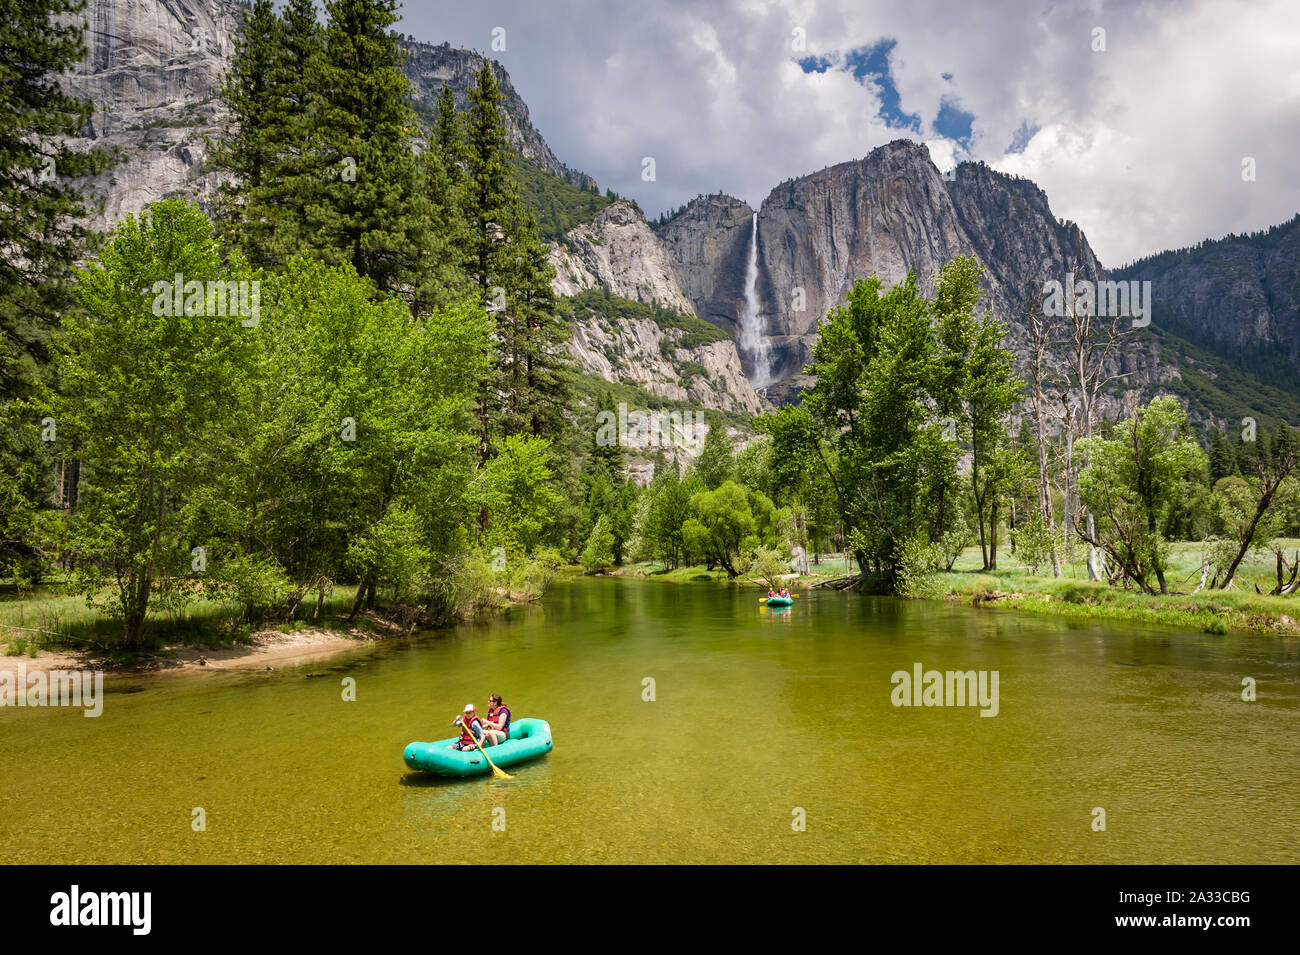 In California, Stati Uniti d'America, 04 Jun 2013: turisti godendo di giro sul fiume con Yosemite Falls in background. Foto Stock